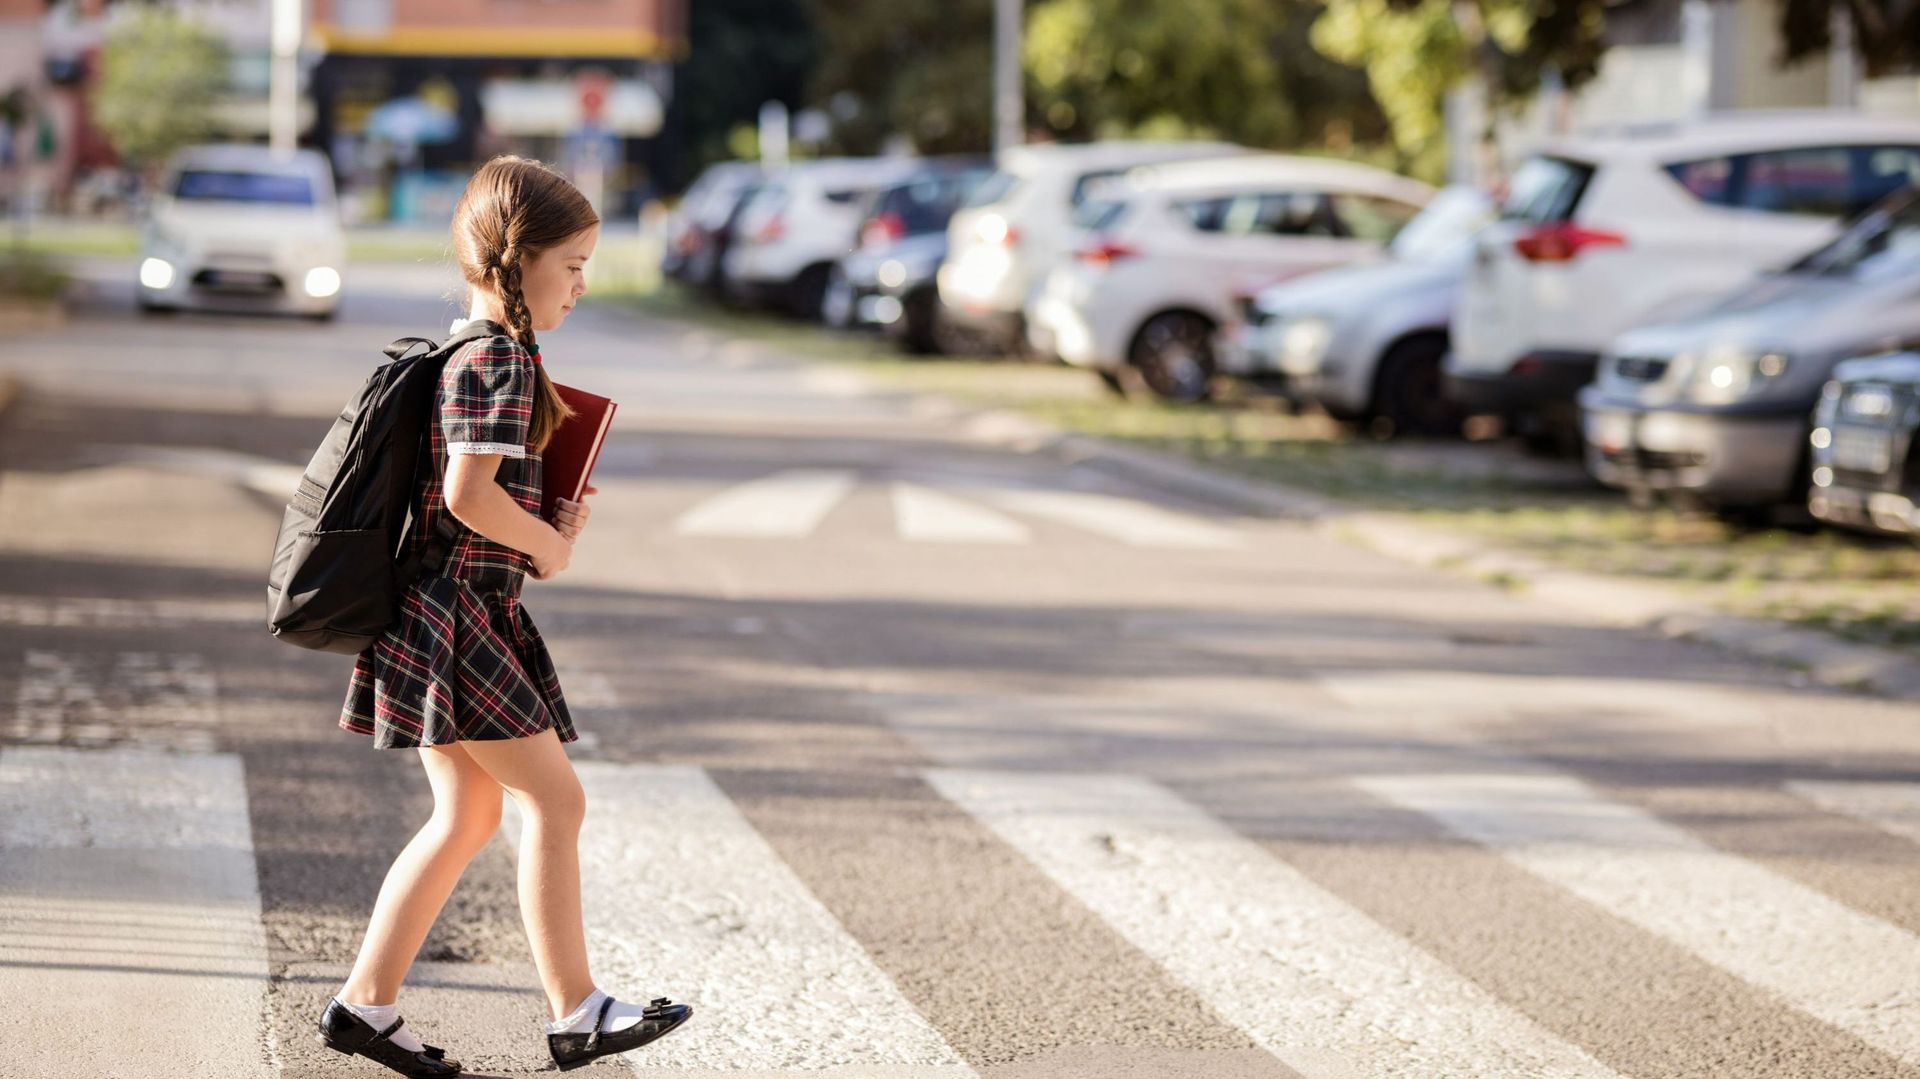 14 enfants sont impliqués dans un accident sur le chemin de l’école en moyenne chaque jour